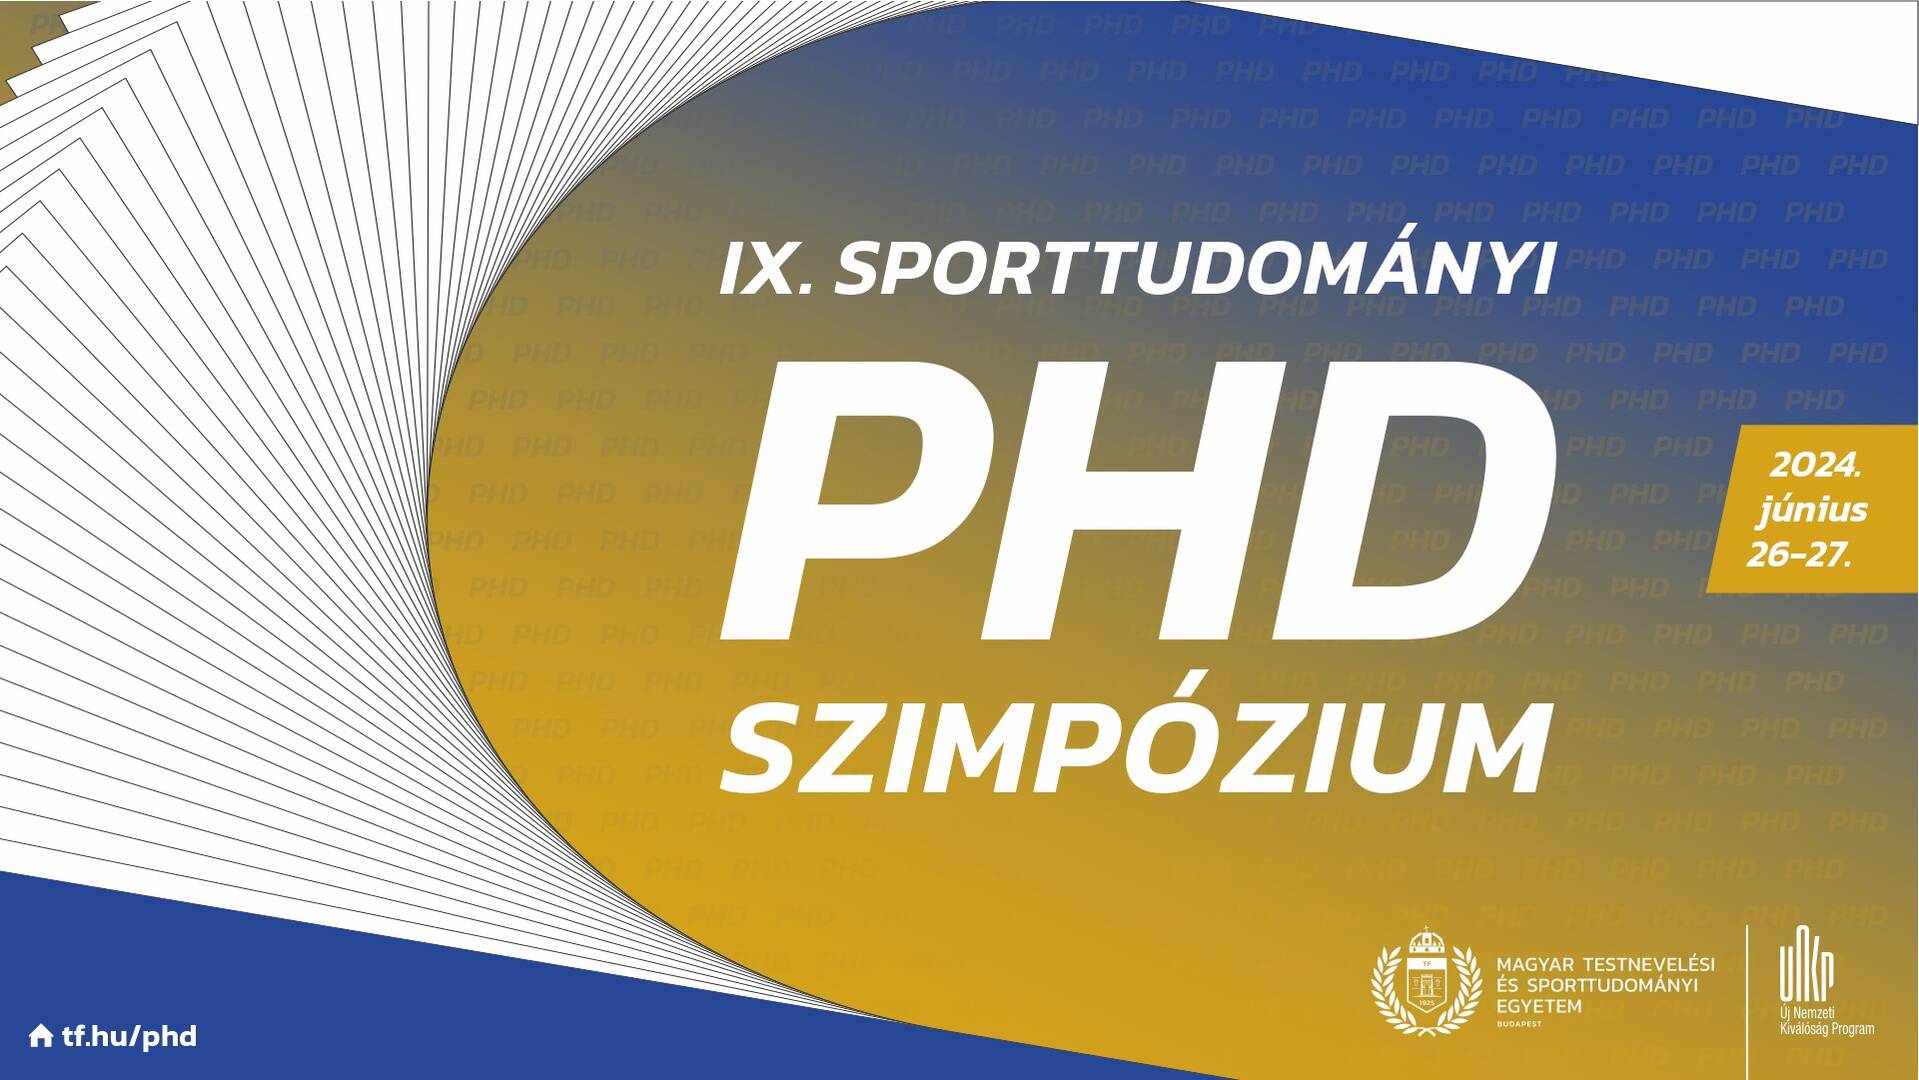 Felhívás a IX. Sporttudományi PhD Szimpóziumra